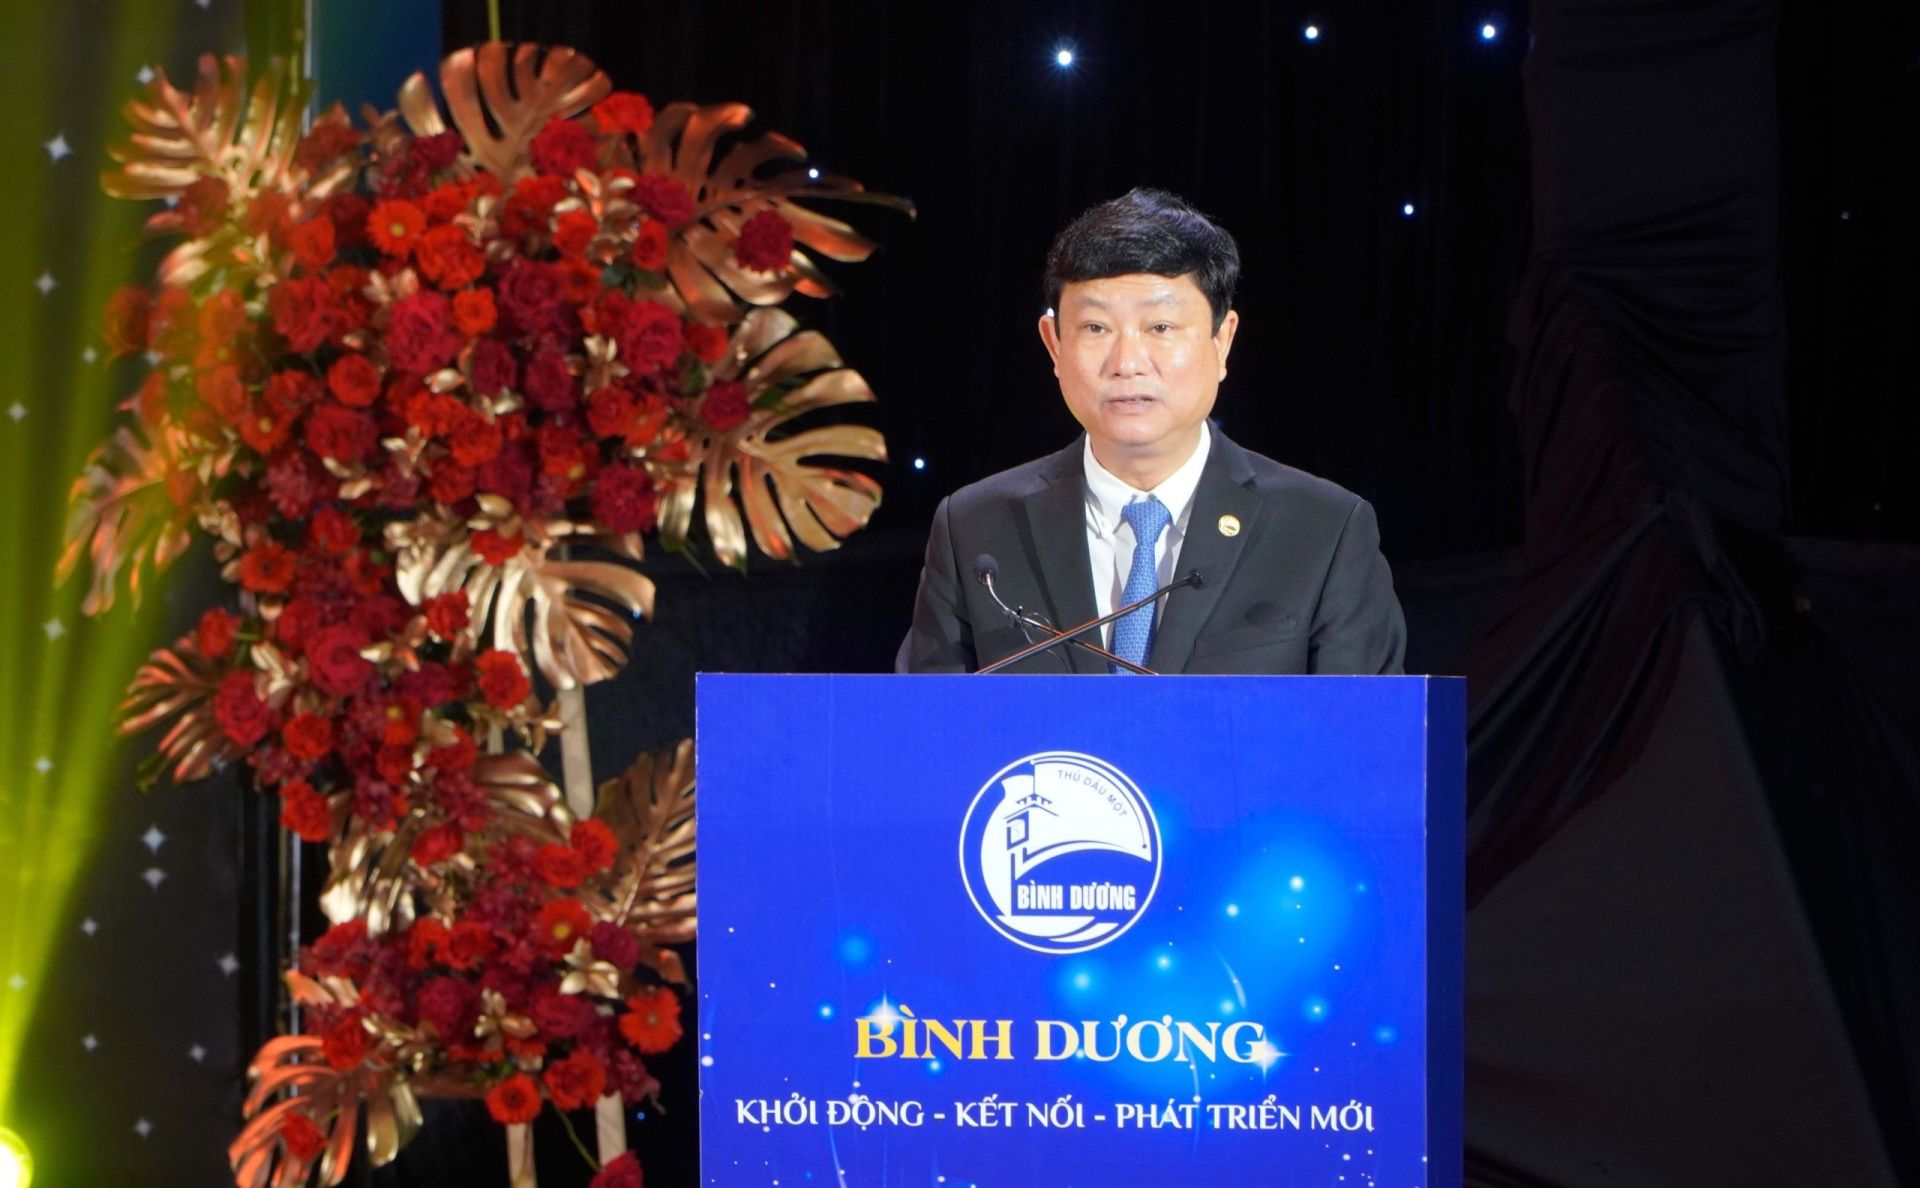 Ông Võ Văn Minh – Phó bí tư tỉnh ủy, Chủ tịch UBND tỉnh Bình Dương